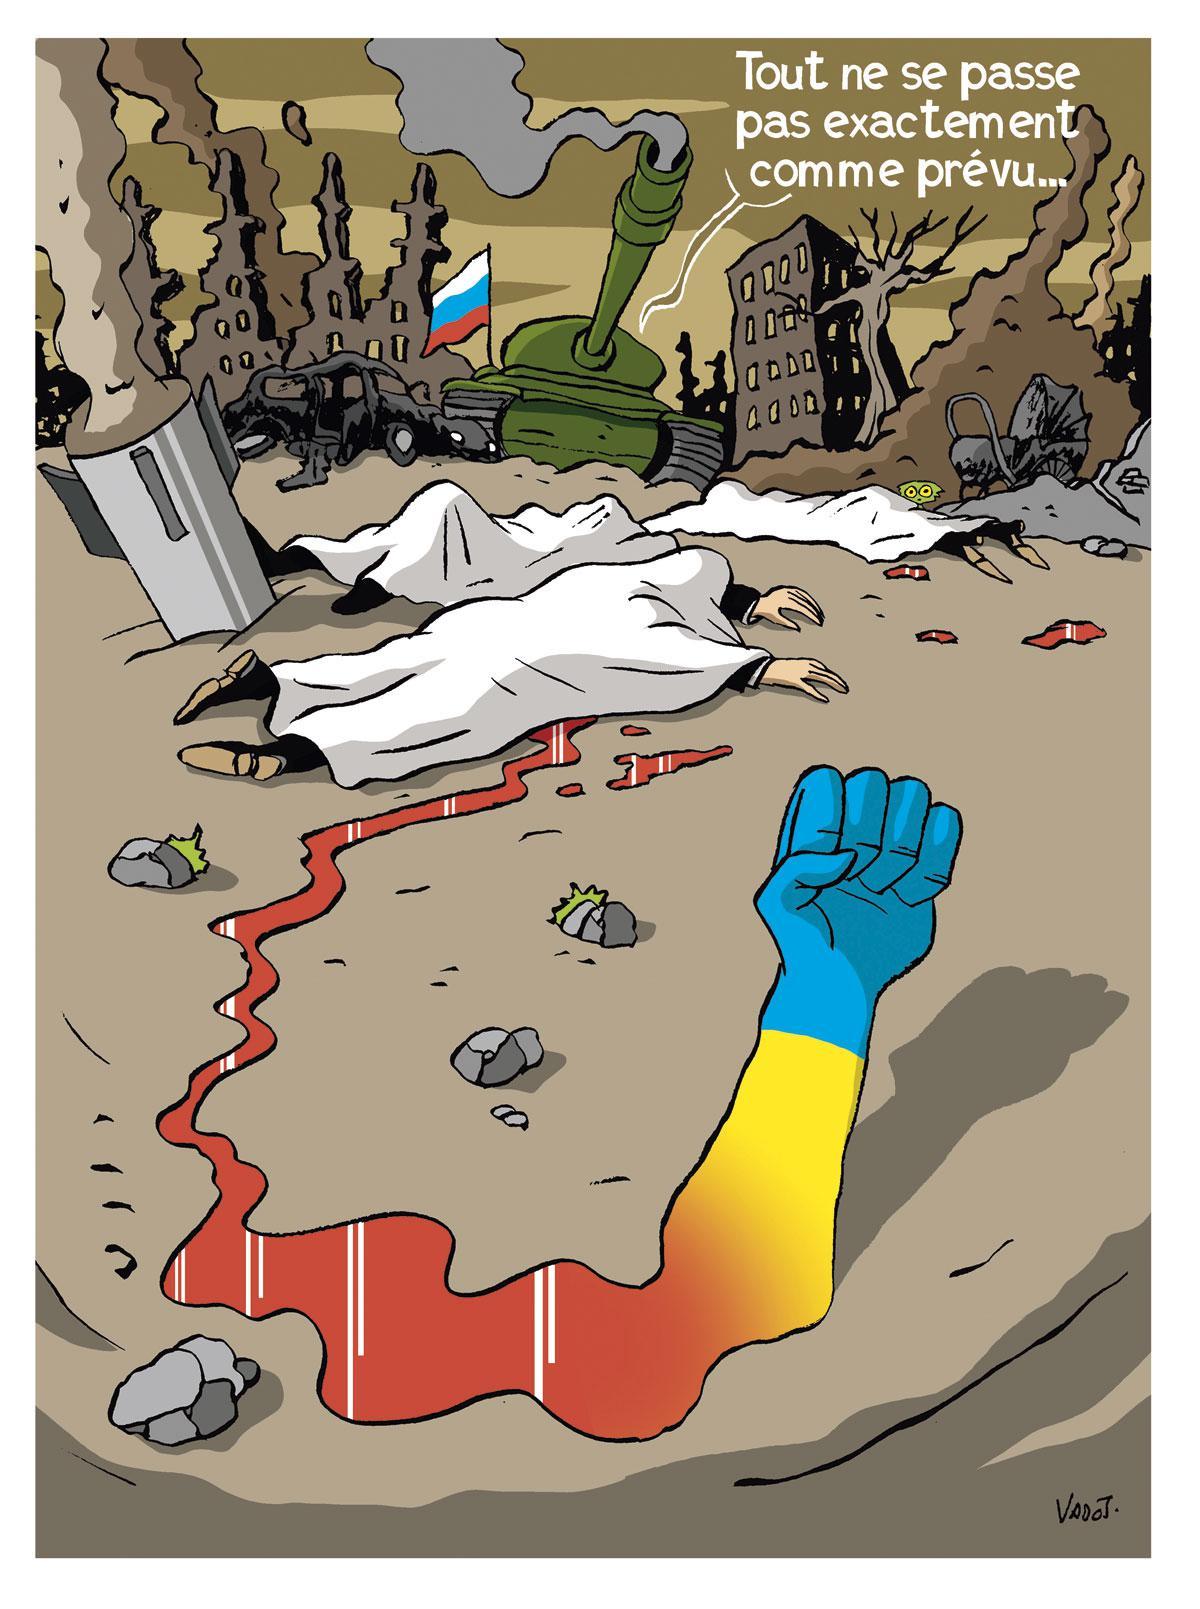 LA GUERRE EN UKRAINE - 17 marsMisant sur une victoire éclair, Vladimir Poutine a sous-estimé la résistance du peuple ukrainien.